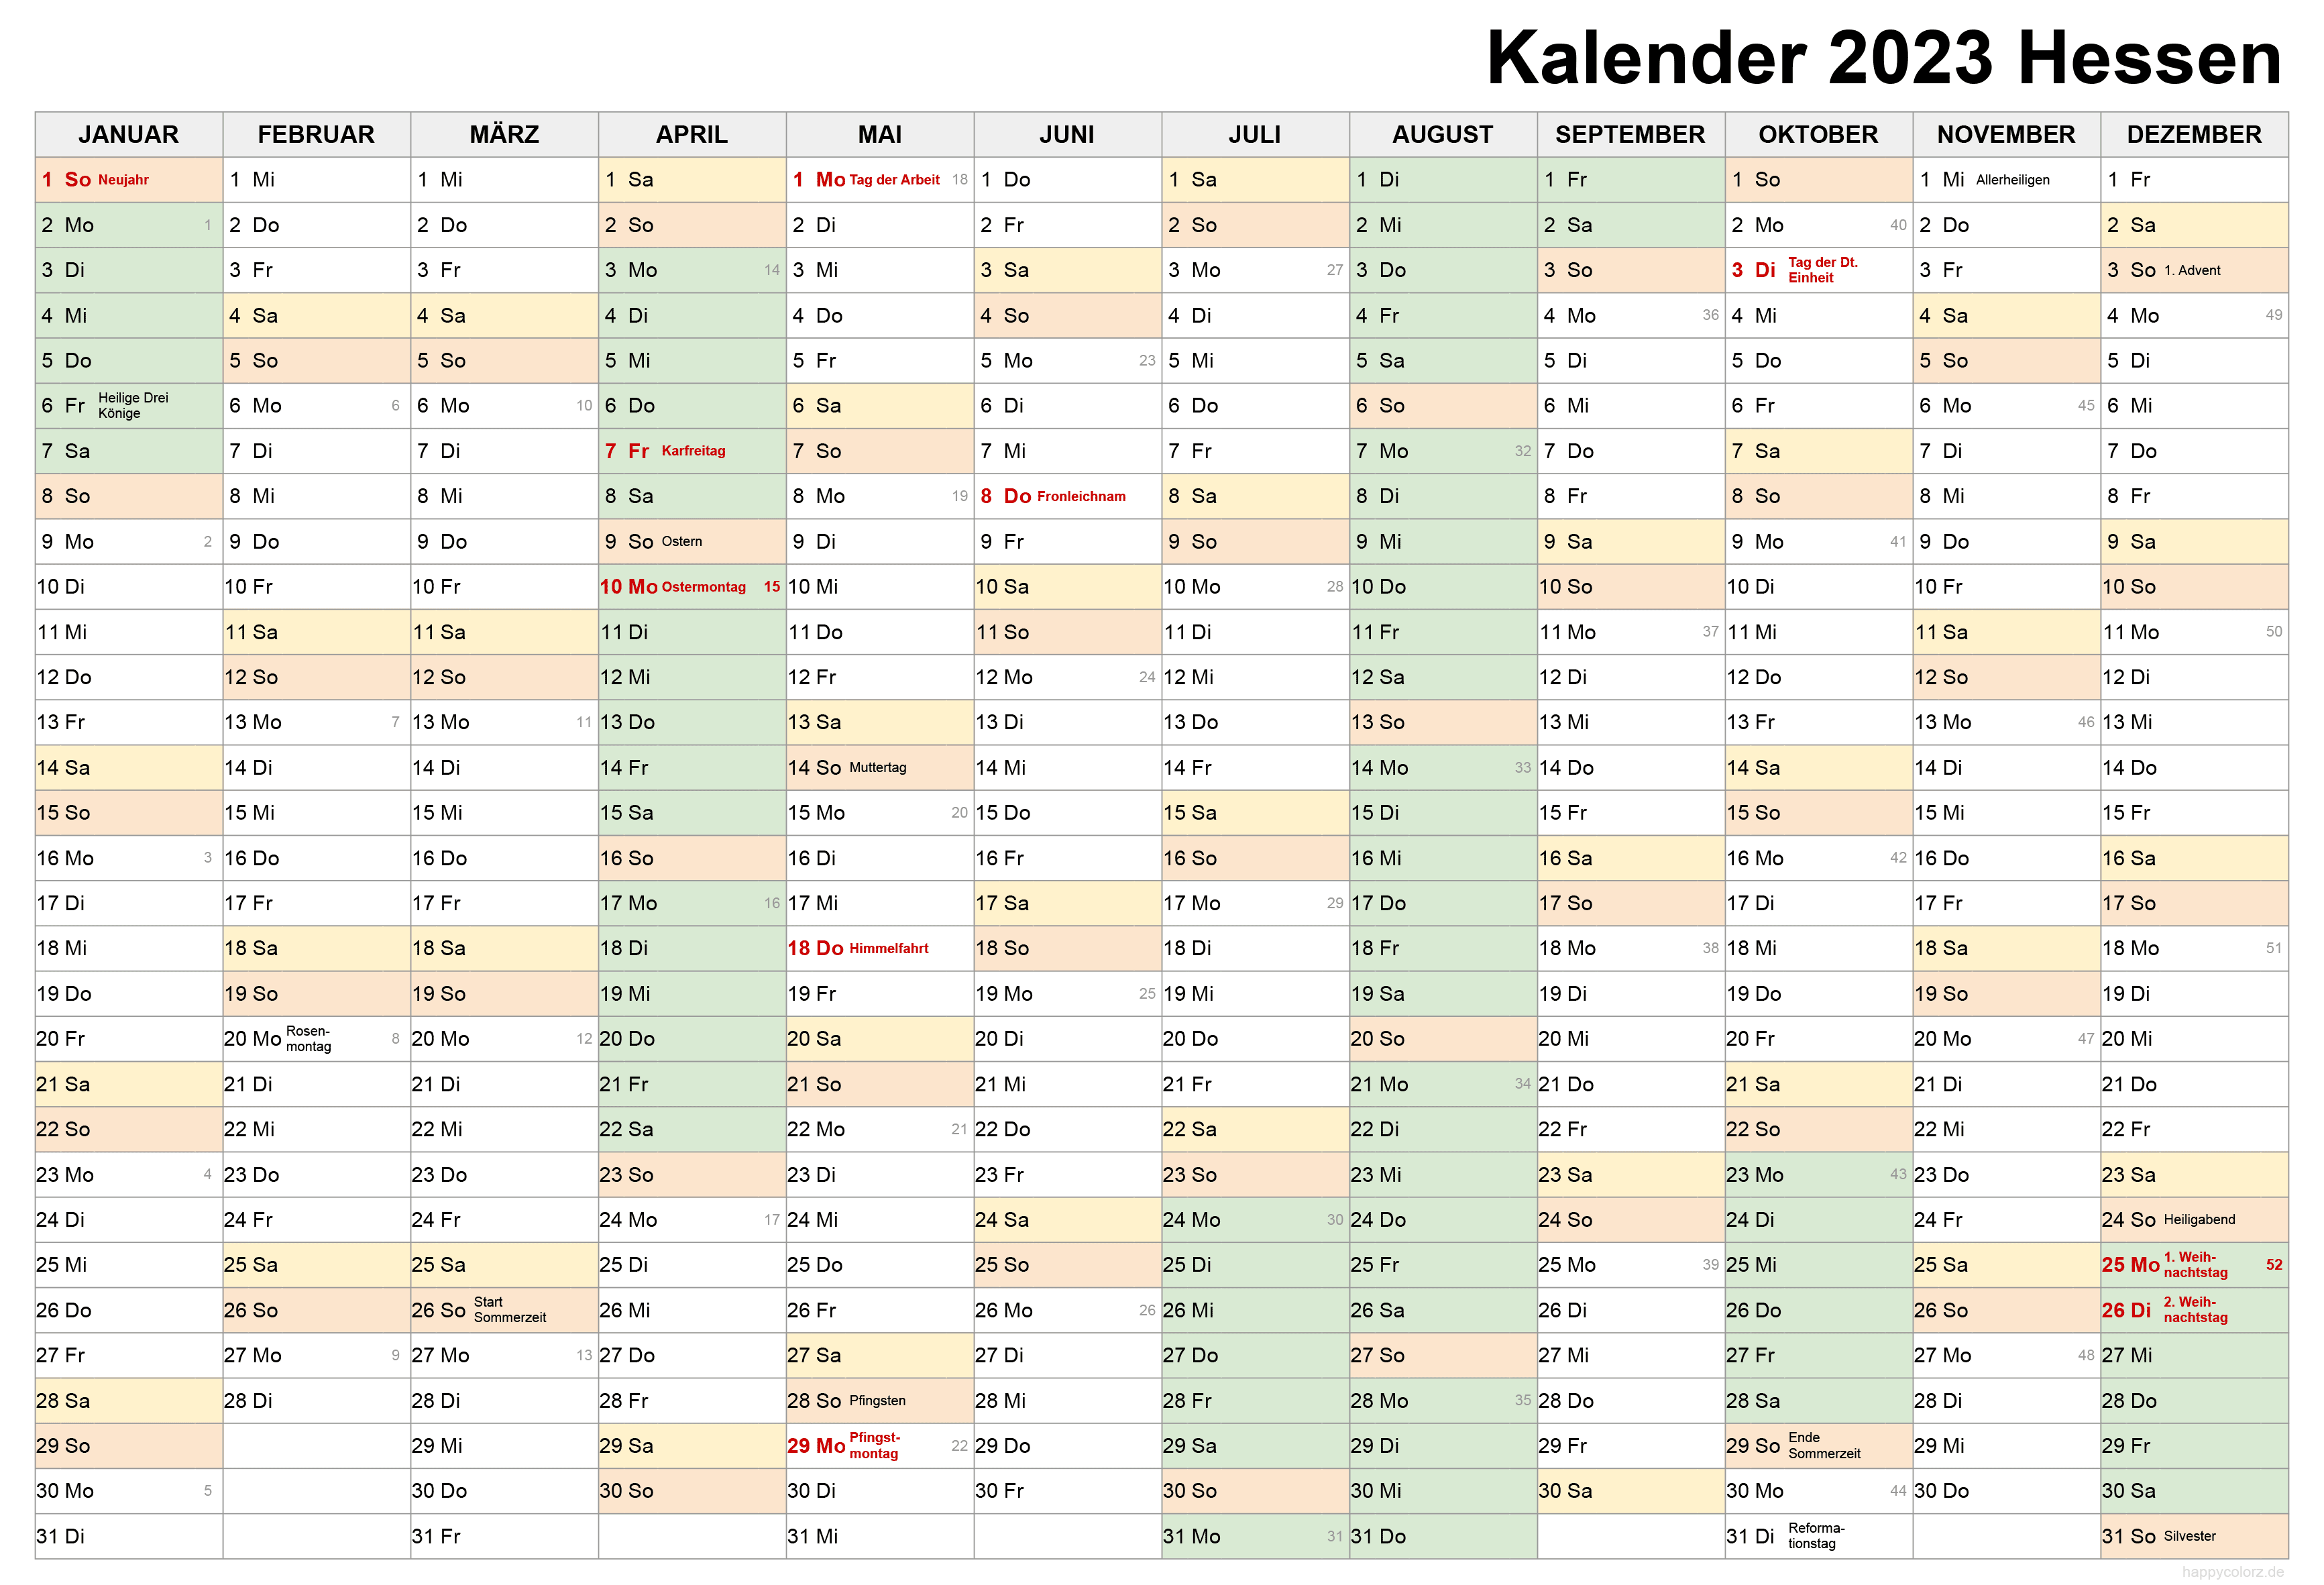 Kalender 2023 Hessen zum Ausdrucken